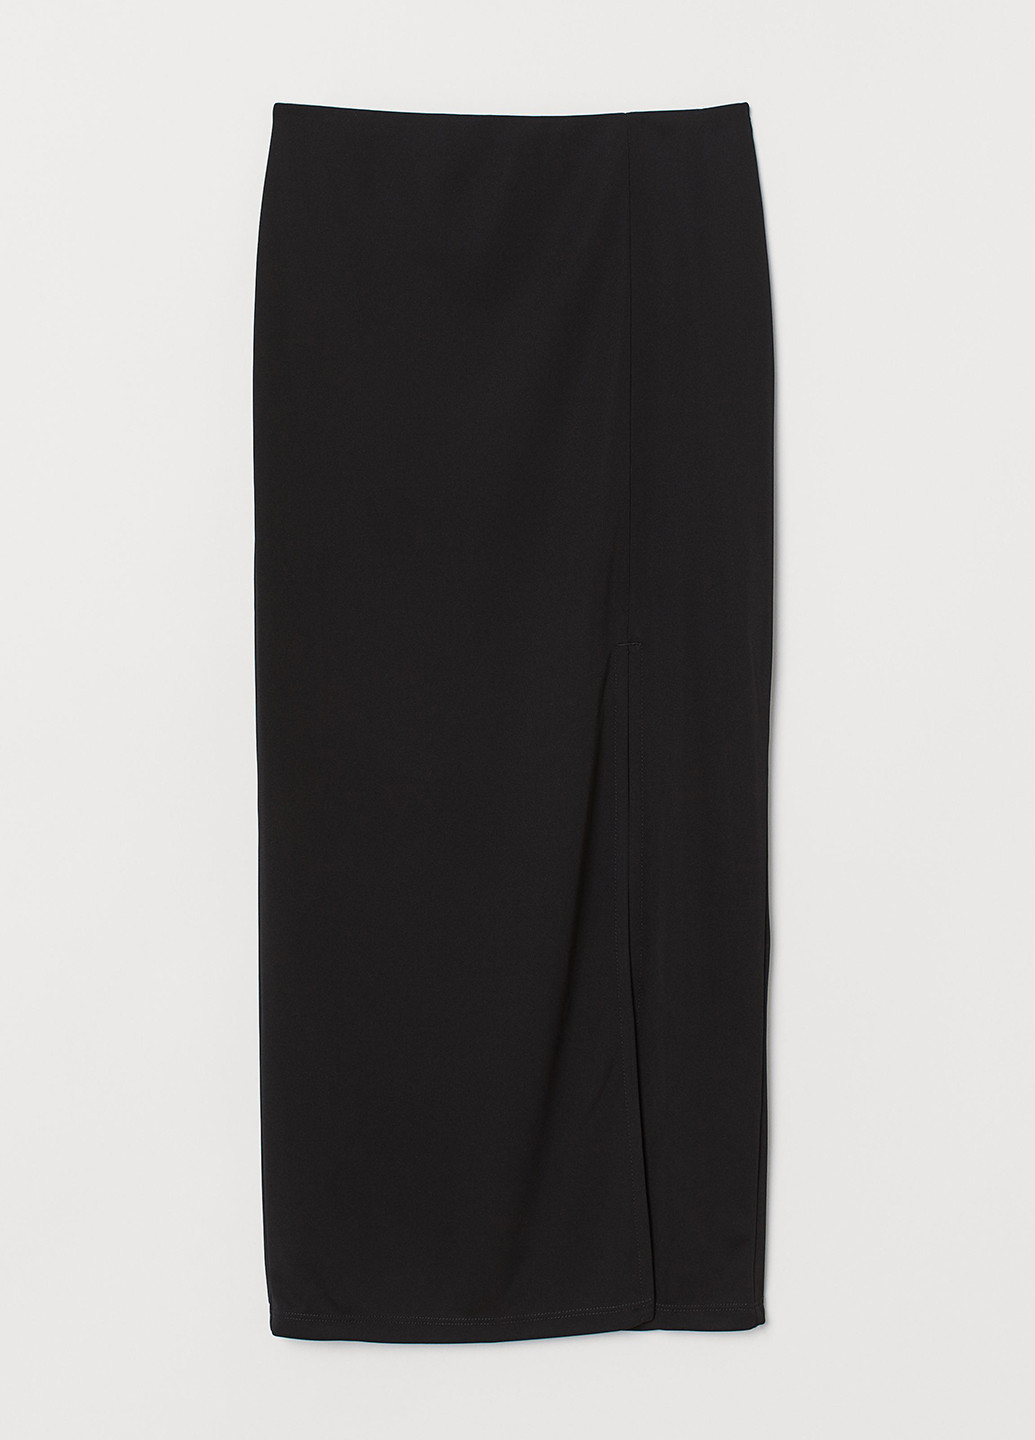 Черная офисная однотонная юбка H&M карандаш